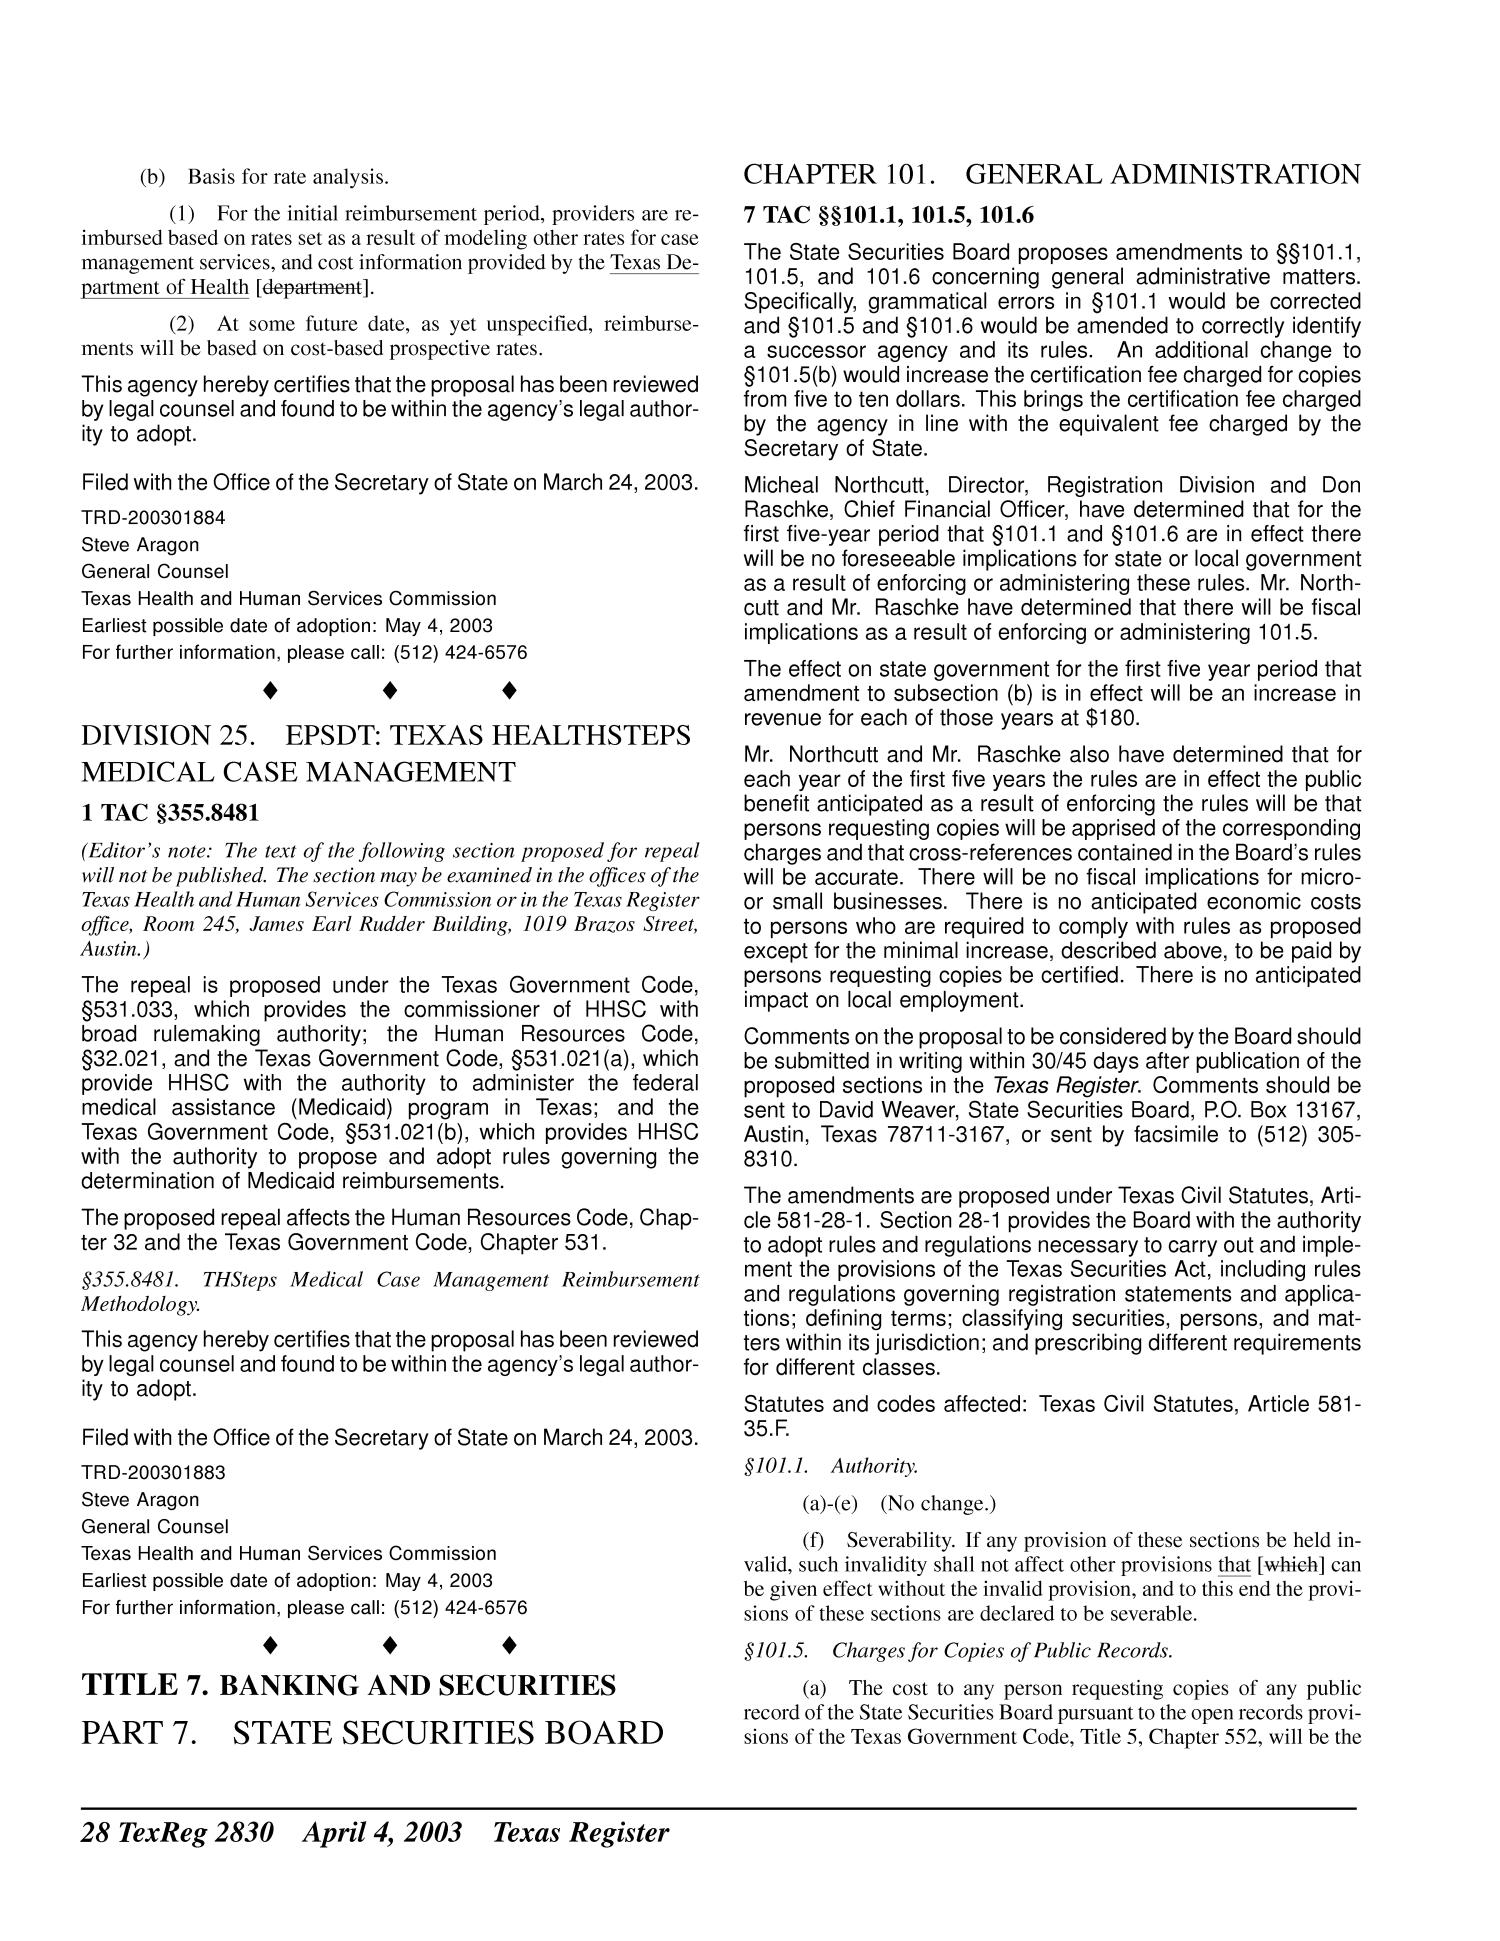 Texas Register, Volume 28, Number 14, Pages 2821-2988, April 4, 2003
                                                
                                                    2830
                                                